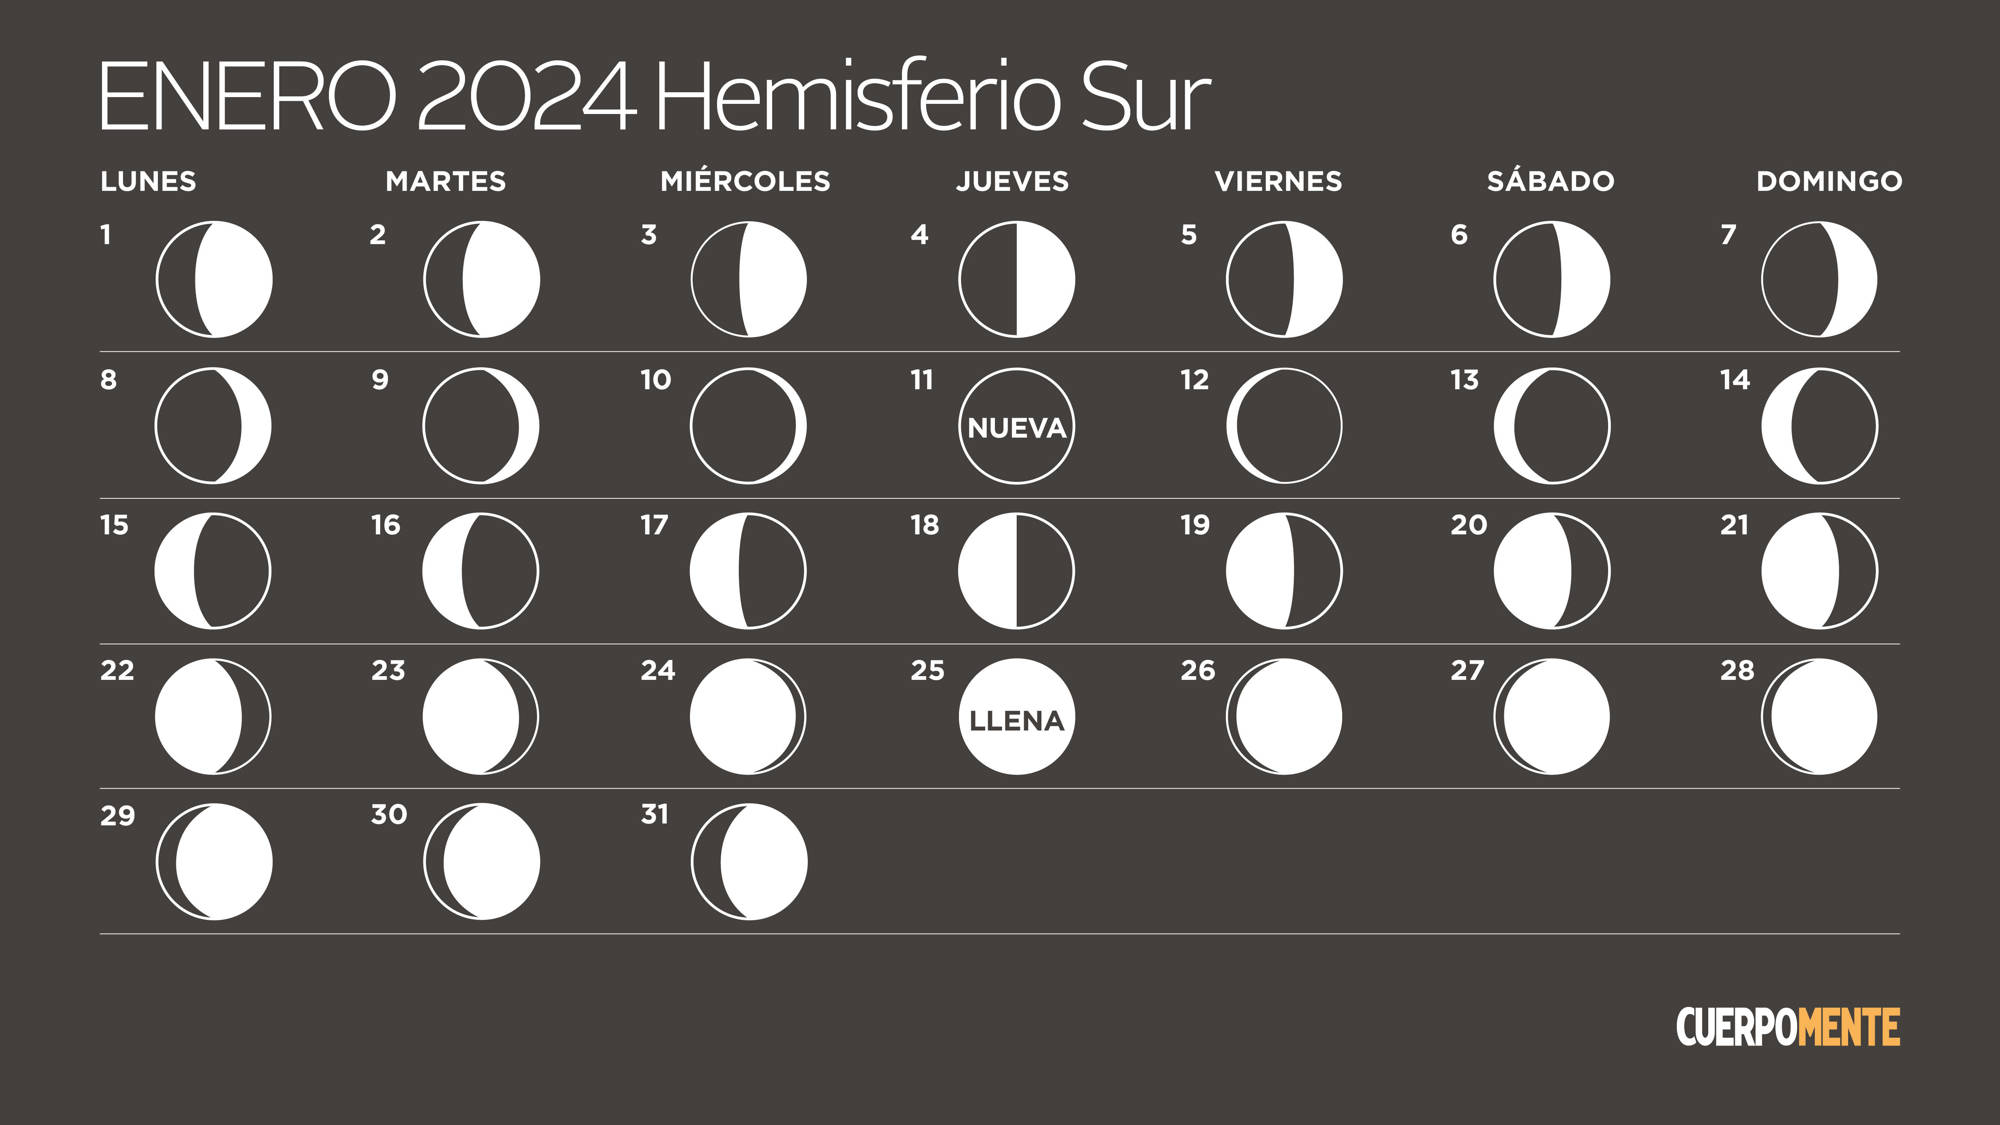 Calendario lunar enero 2024 hemisferio sur